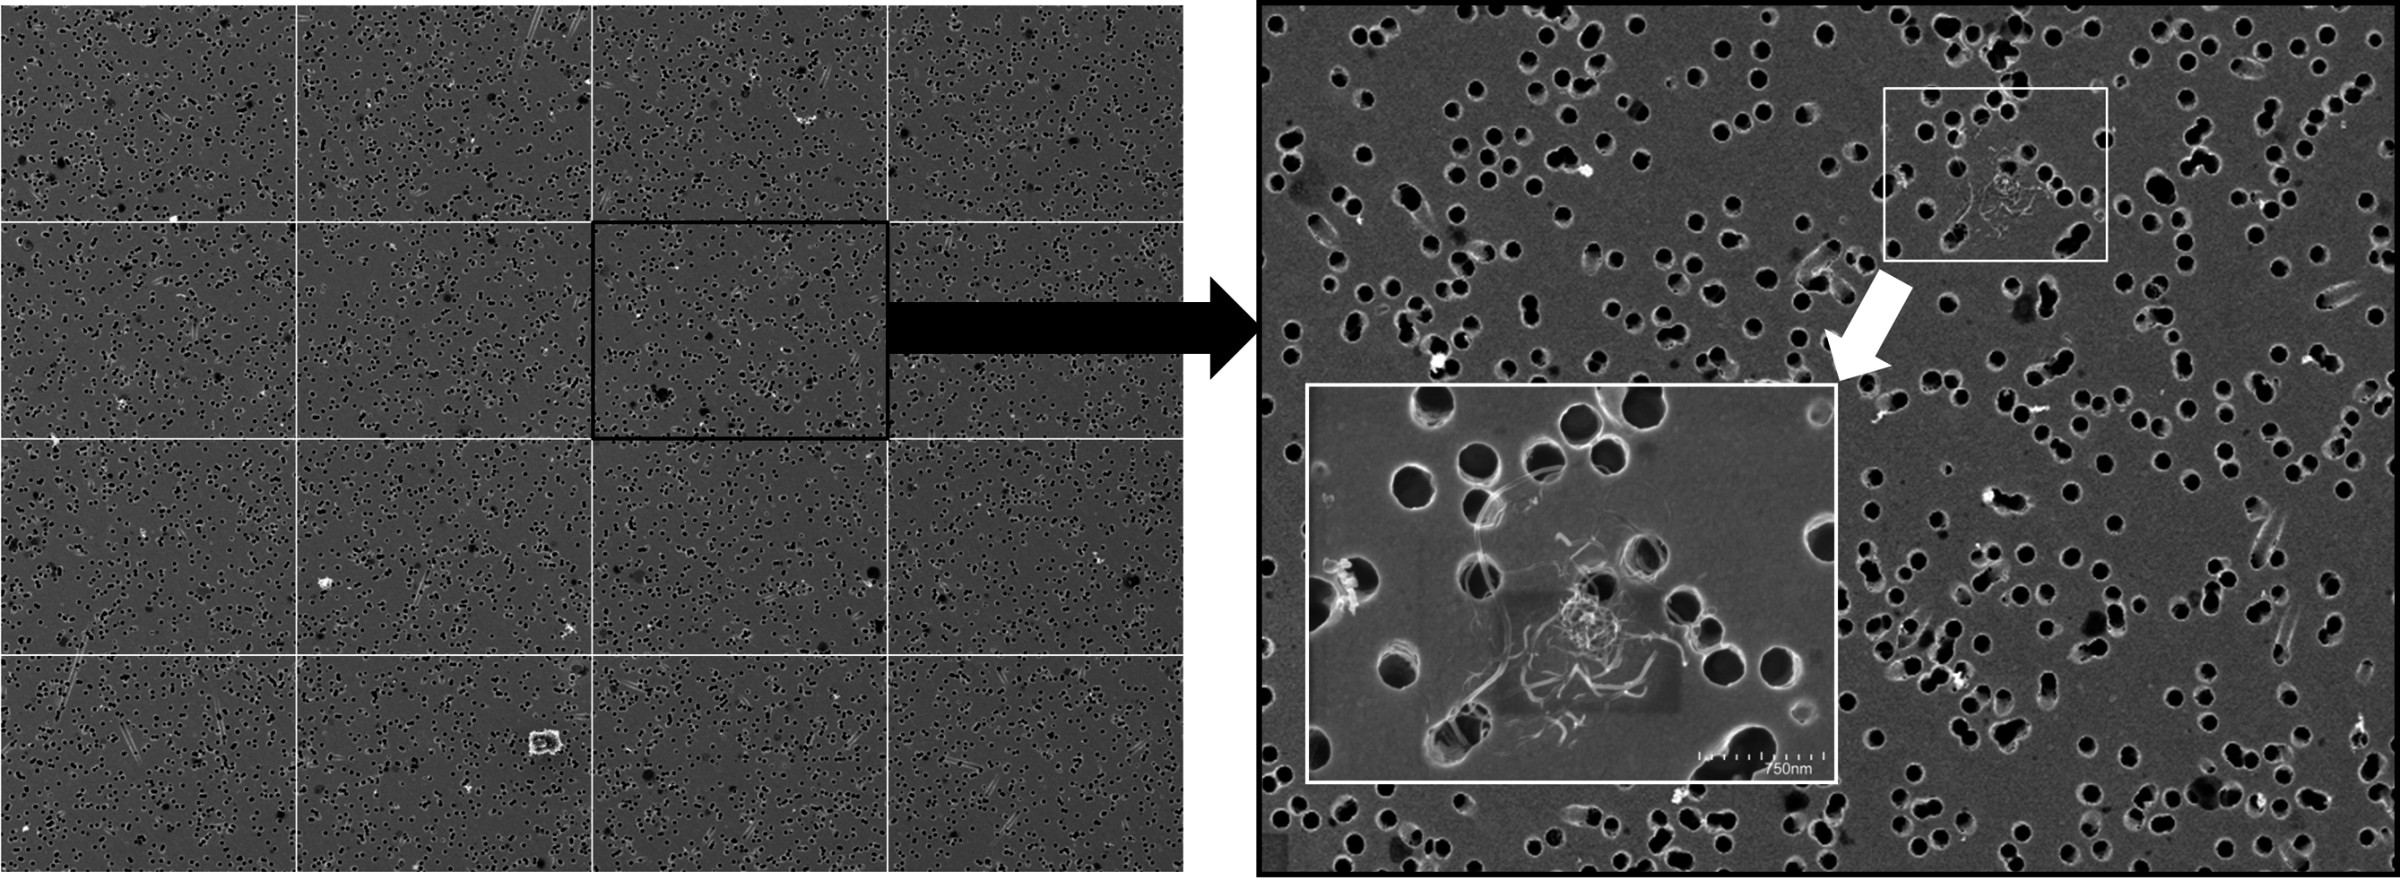 Bild 2. Zerteilung der digitalisierten 20-MPixel-Bilder im Nachgang zur REM-Analyse in 16 Teilbilder für eine pixelgenaue Darstellung auf einem Monitor mit dem Ziel einer visuellen Identifizierung nanoskaliger Fasern. Quelle: BAuA/ Suva / IFA